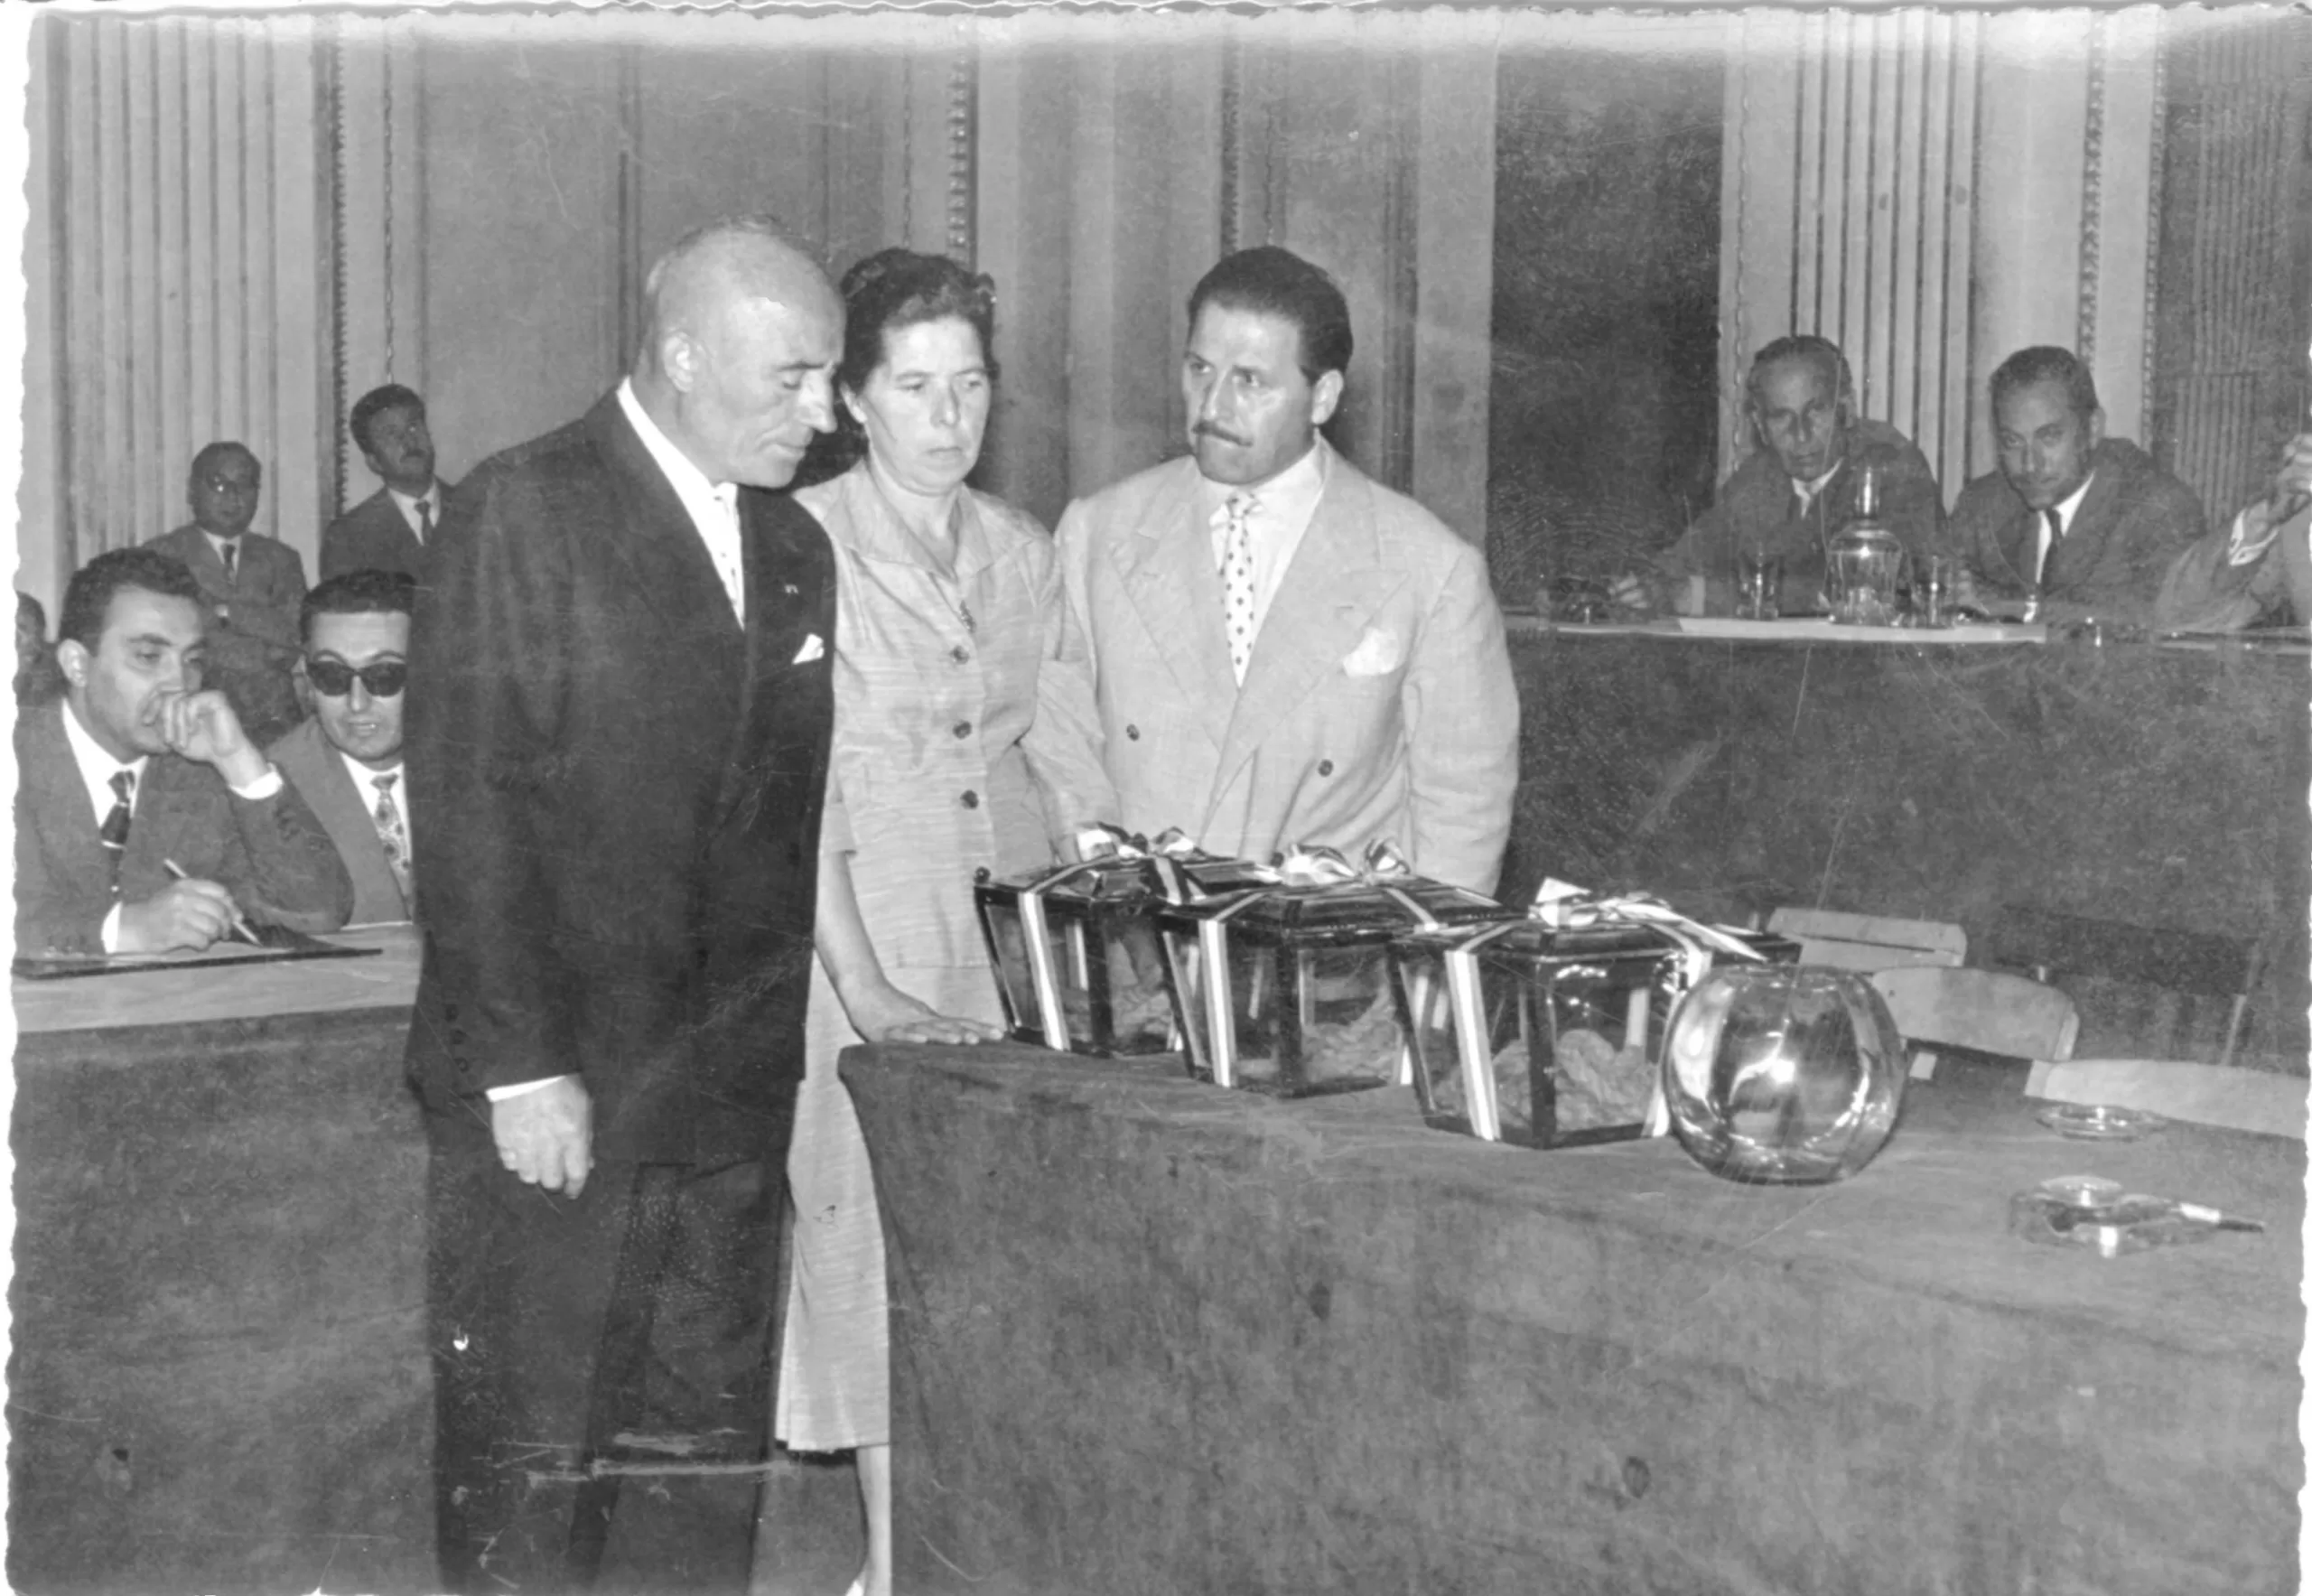 1957. Da sx in pedi Guglielmo Marconi, Rosina Donini, Decio Mercanti. A sx Giuseppe Gemmani, a dx Giordano Gentilini.